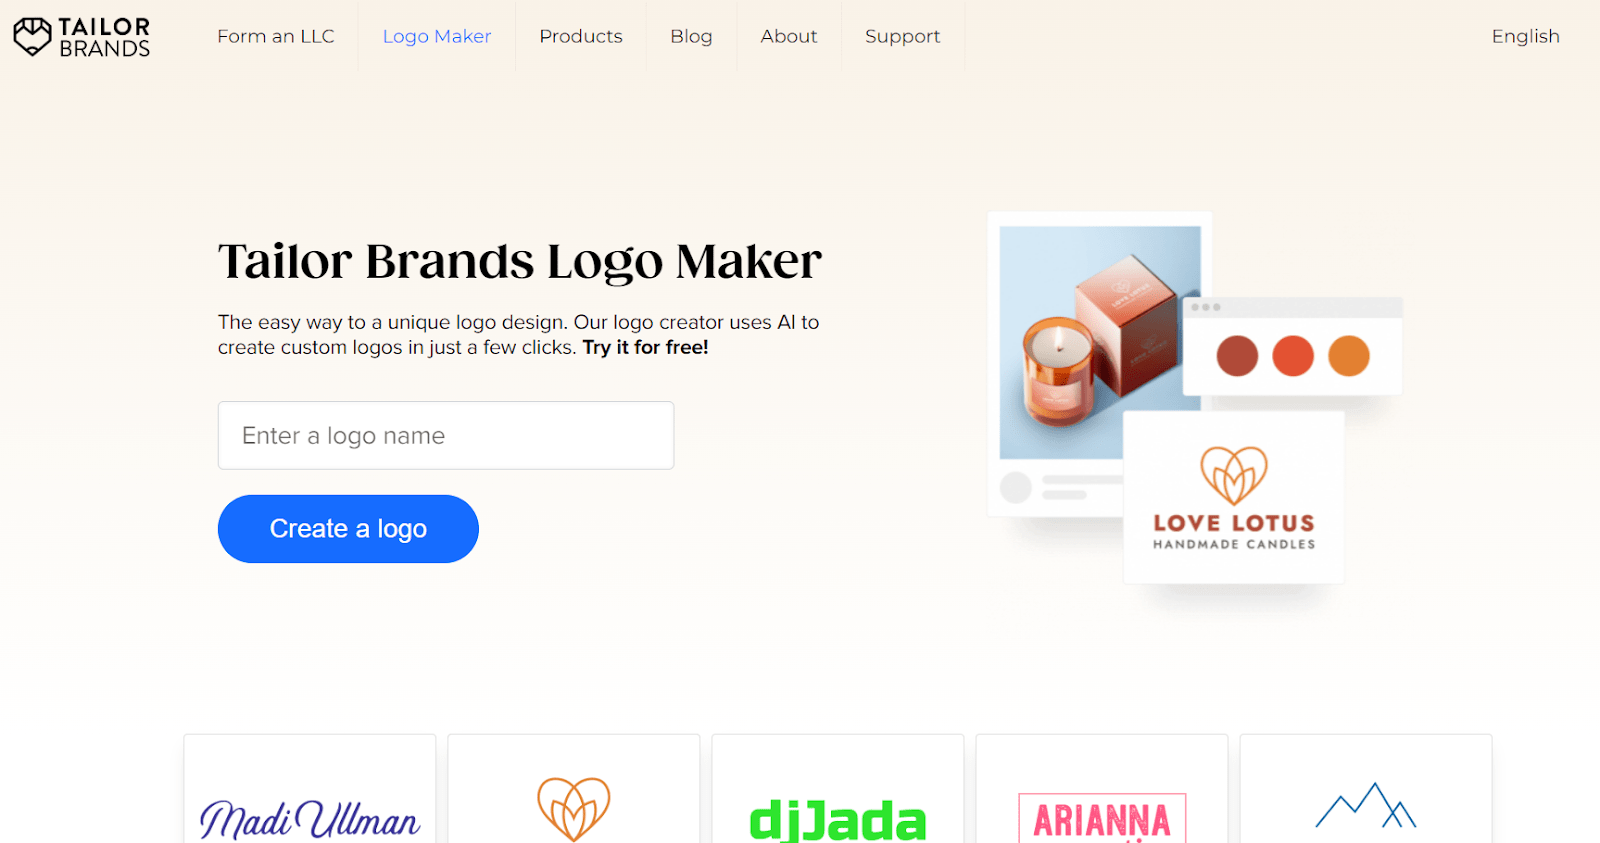 tailor brands website - logo maker 